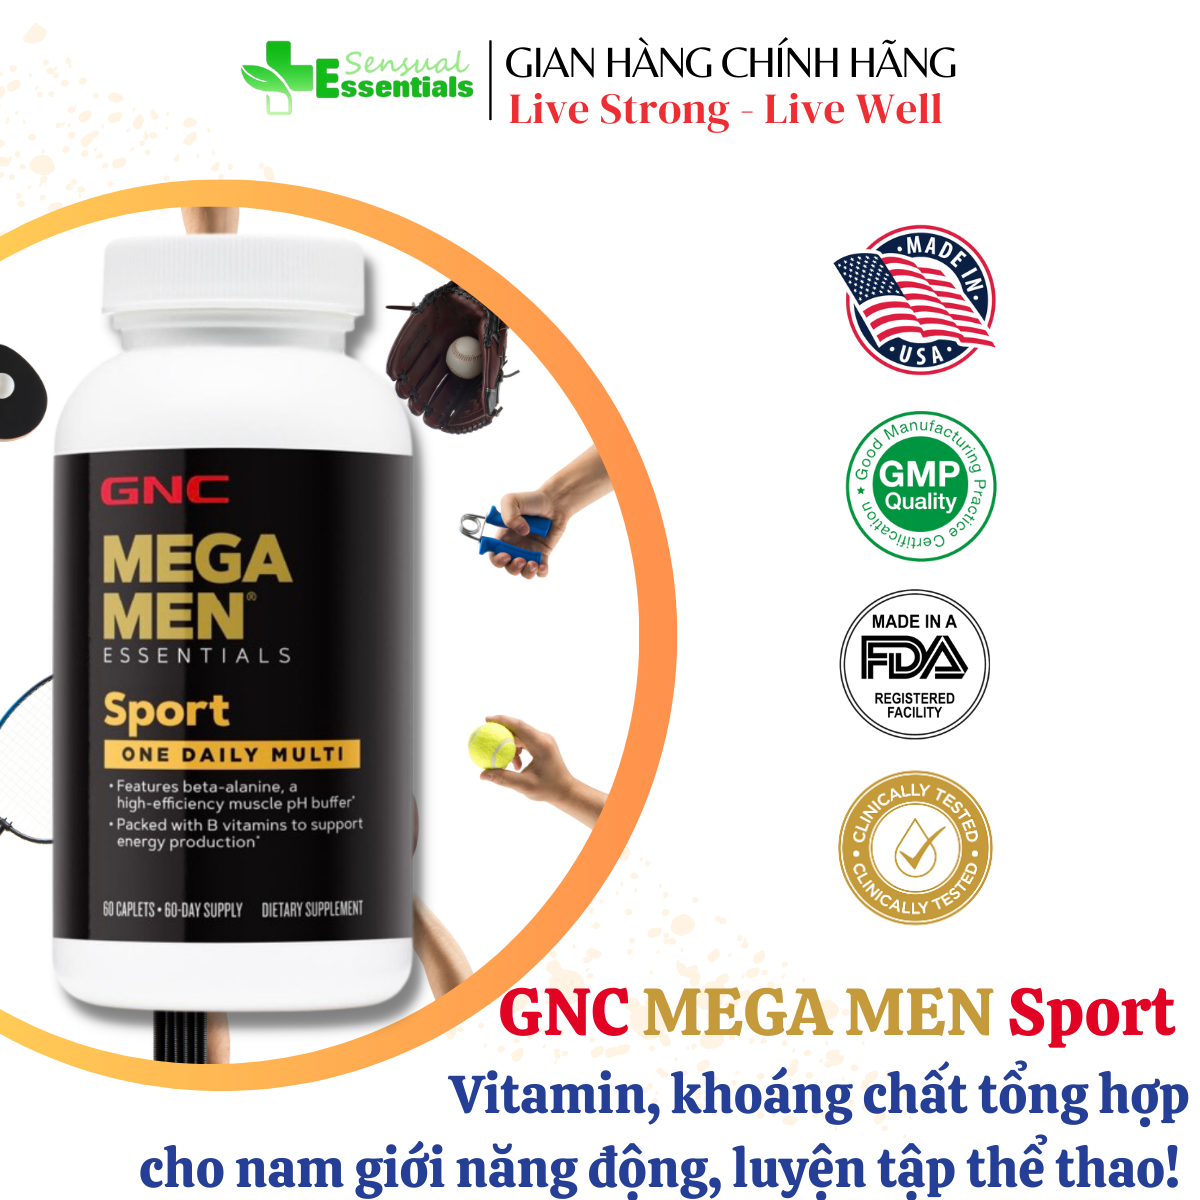 GNC Mega Men Sport one daily multi